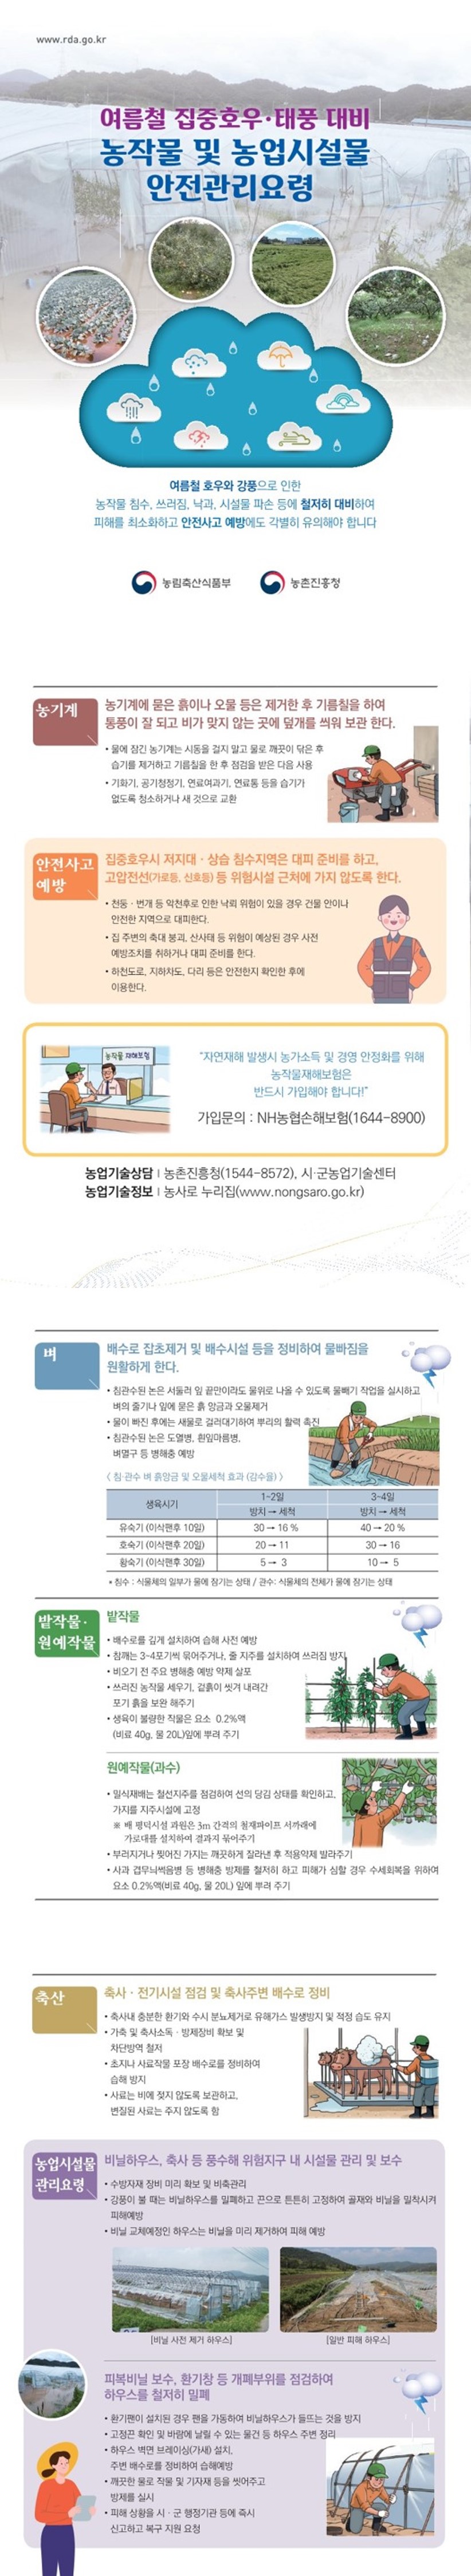 [리플릿] 여름철 집중호우·태풍 대비 농작물 및 농업시설물 안전관리요령 이미지 1 - 본문에 자세한설명을 제공합니다.